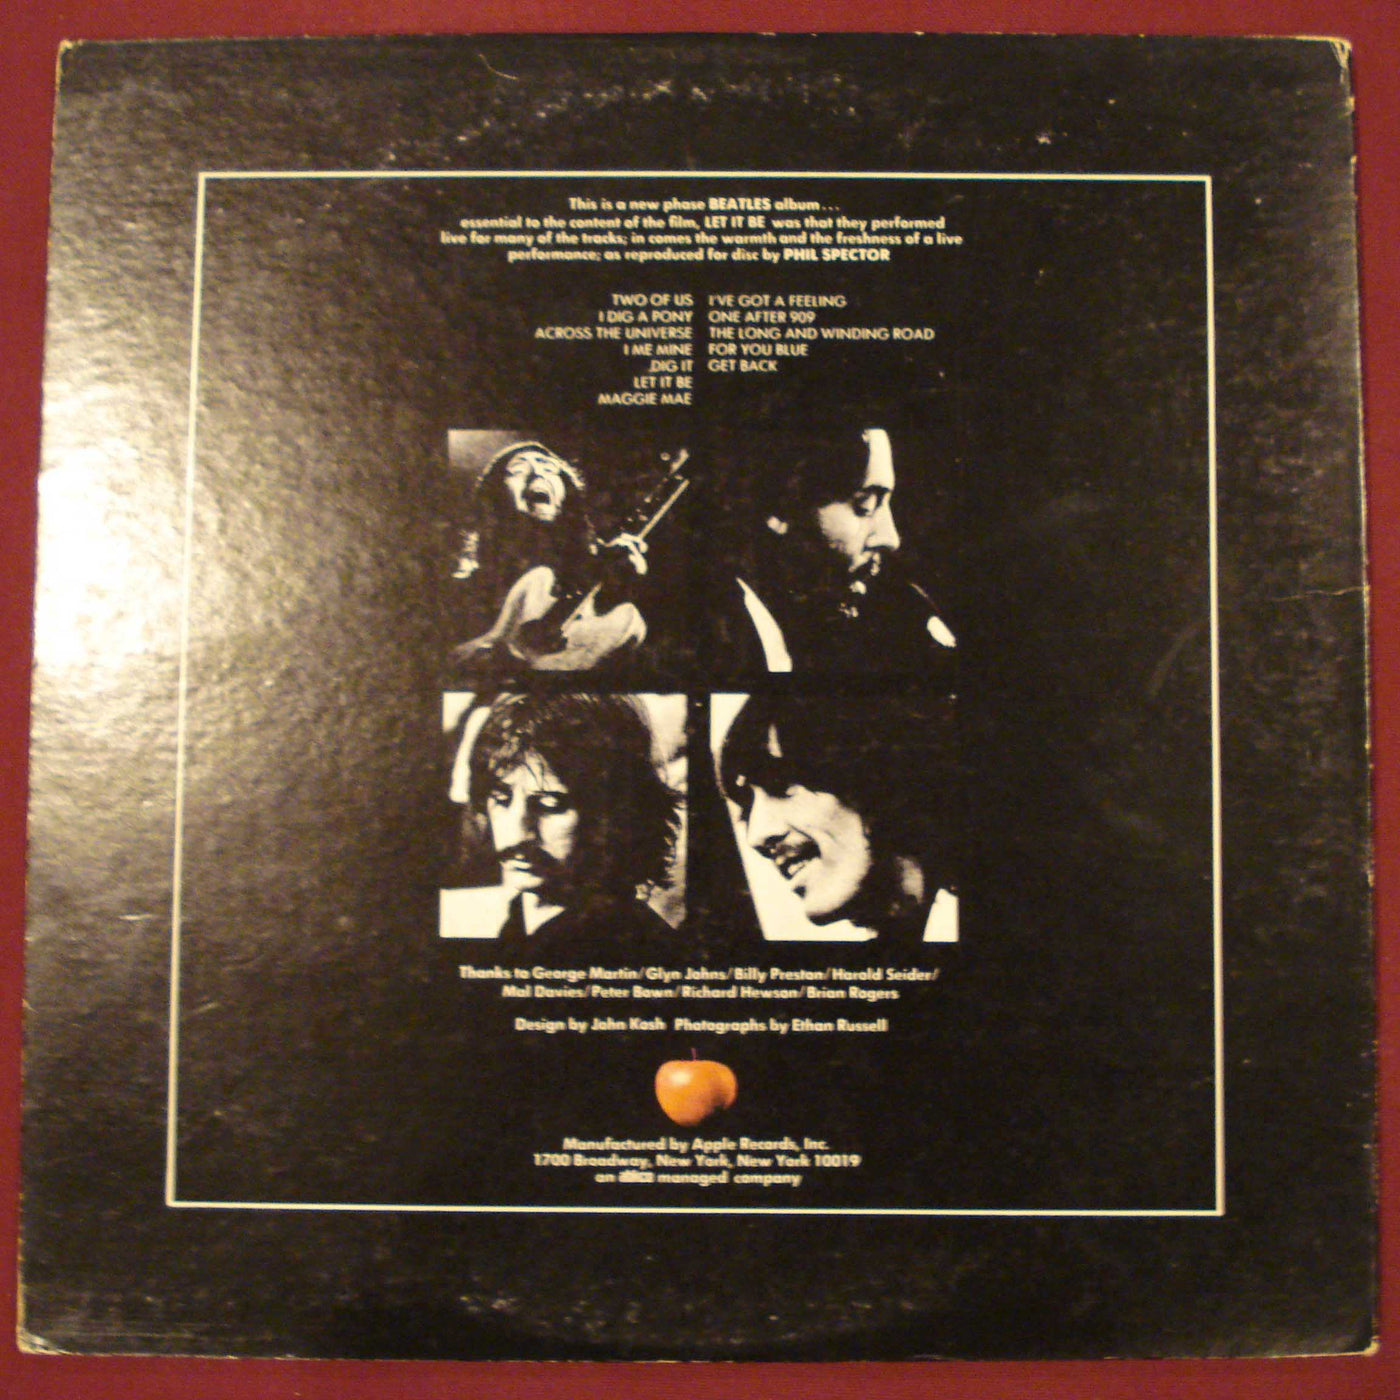 The Beatles - Let It Be (1970) Vinyl LP 33rpm AR34001